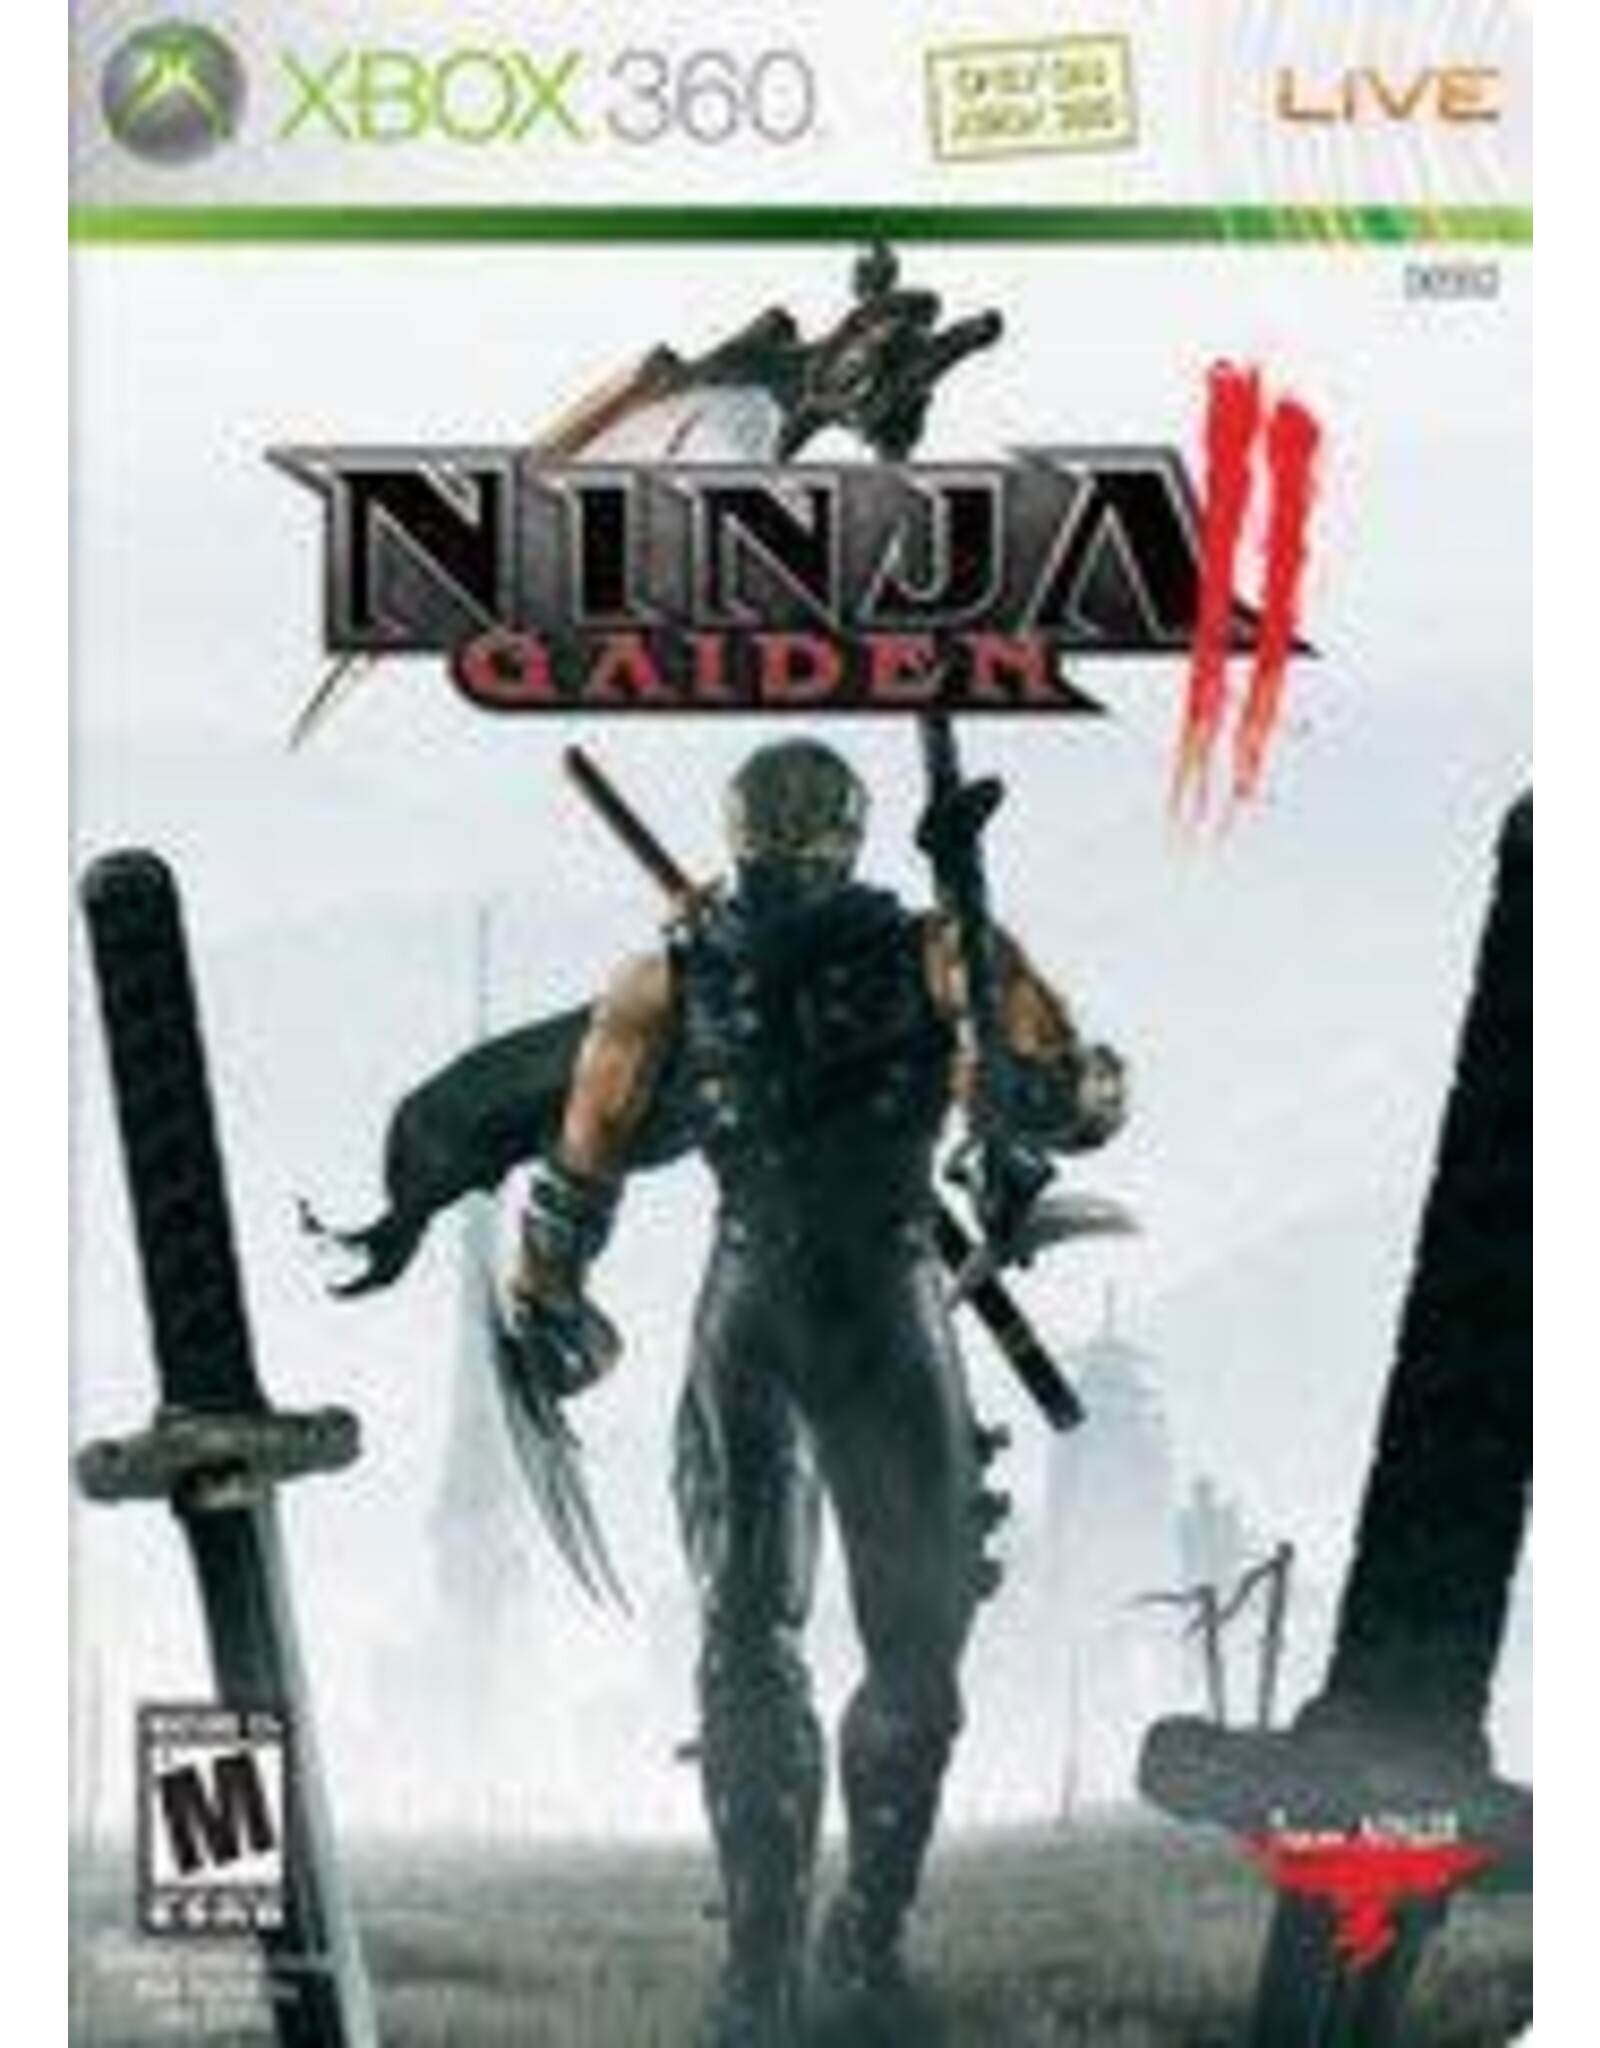 Xbox 360 Ninja Gaiden II (No Manual)